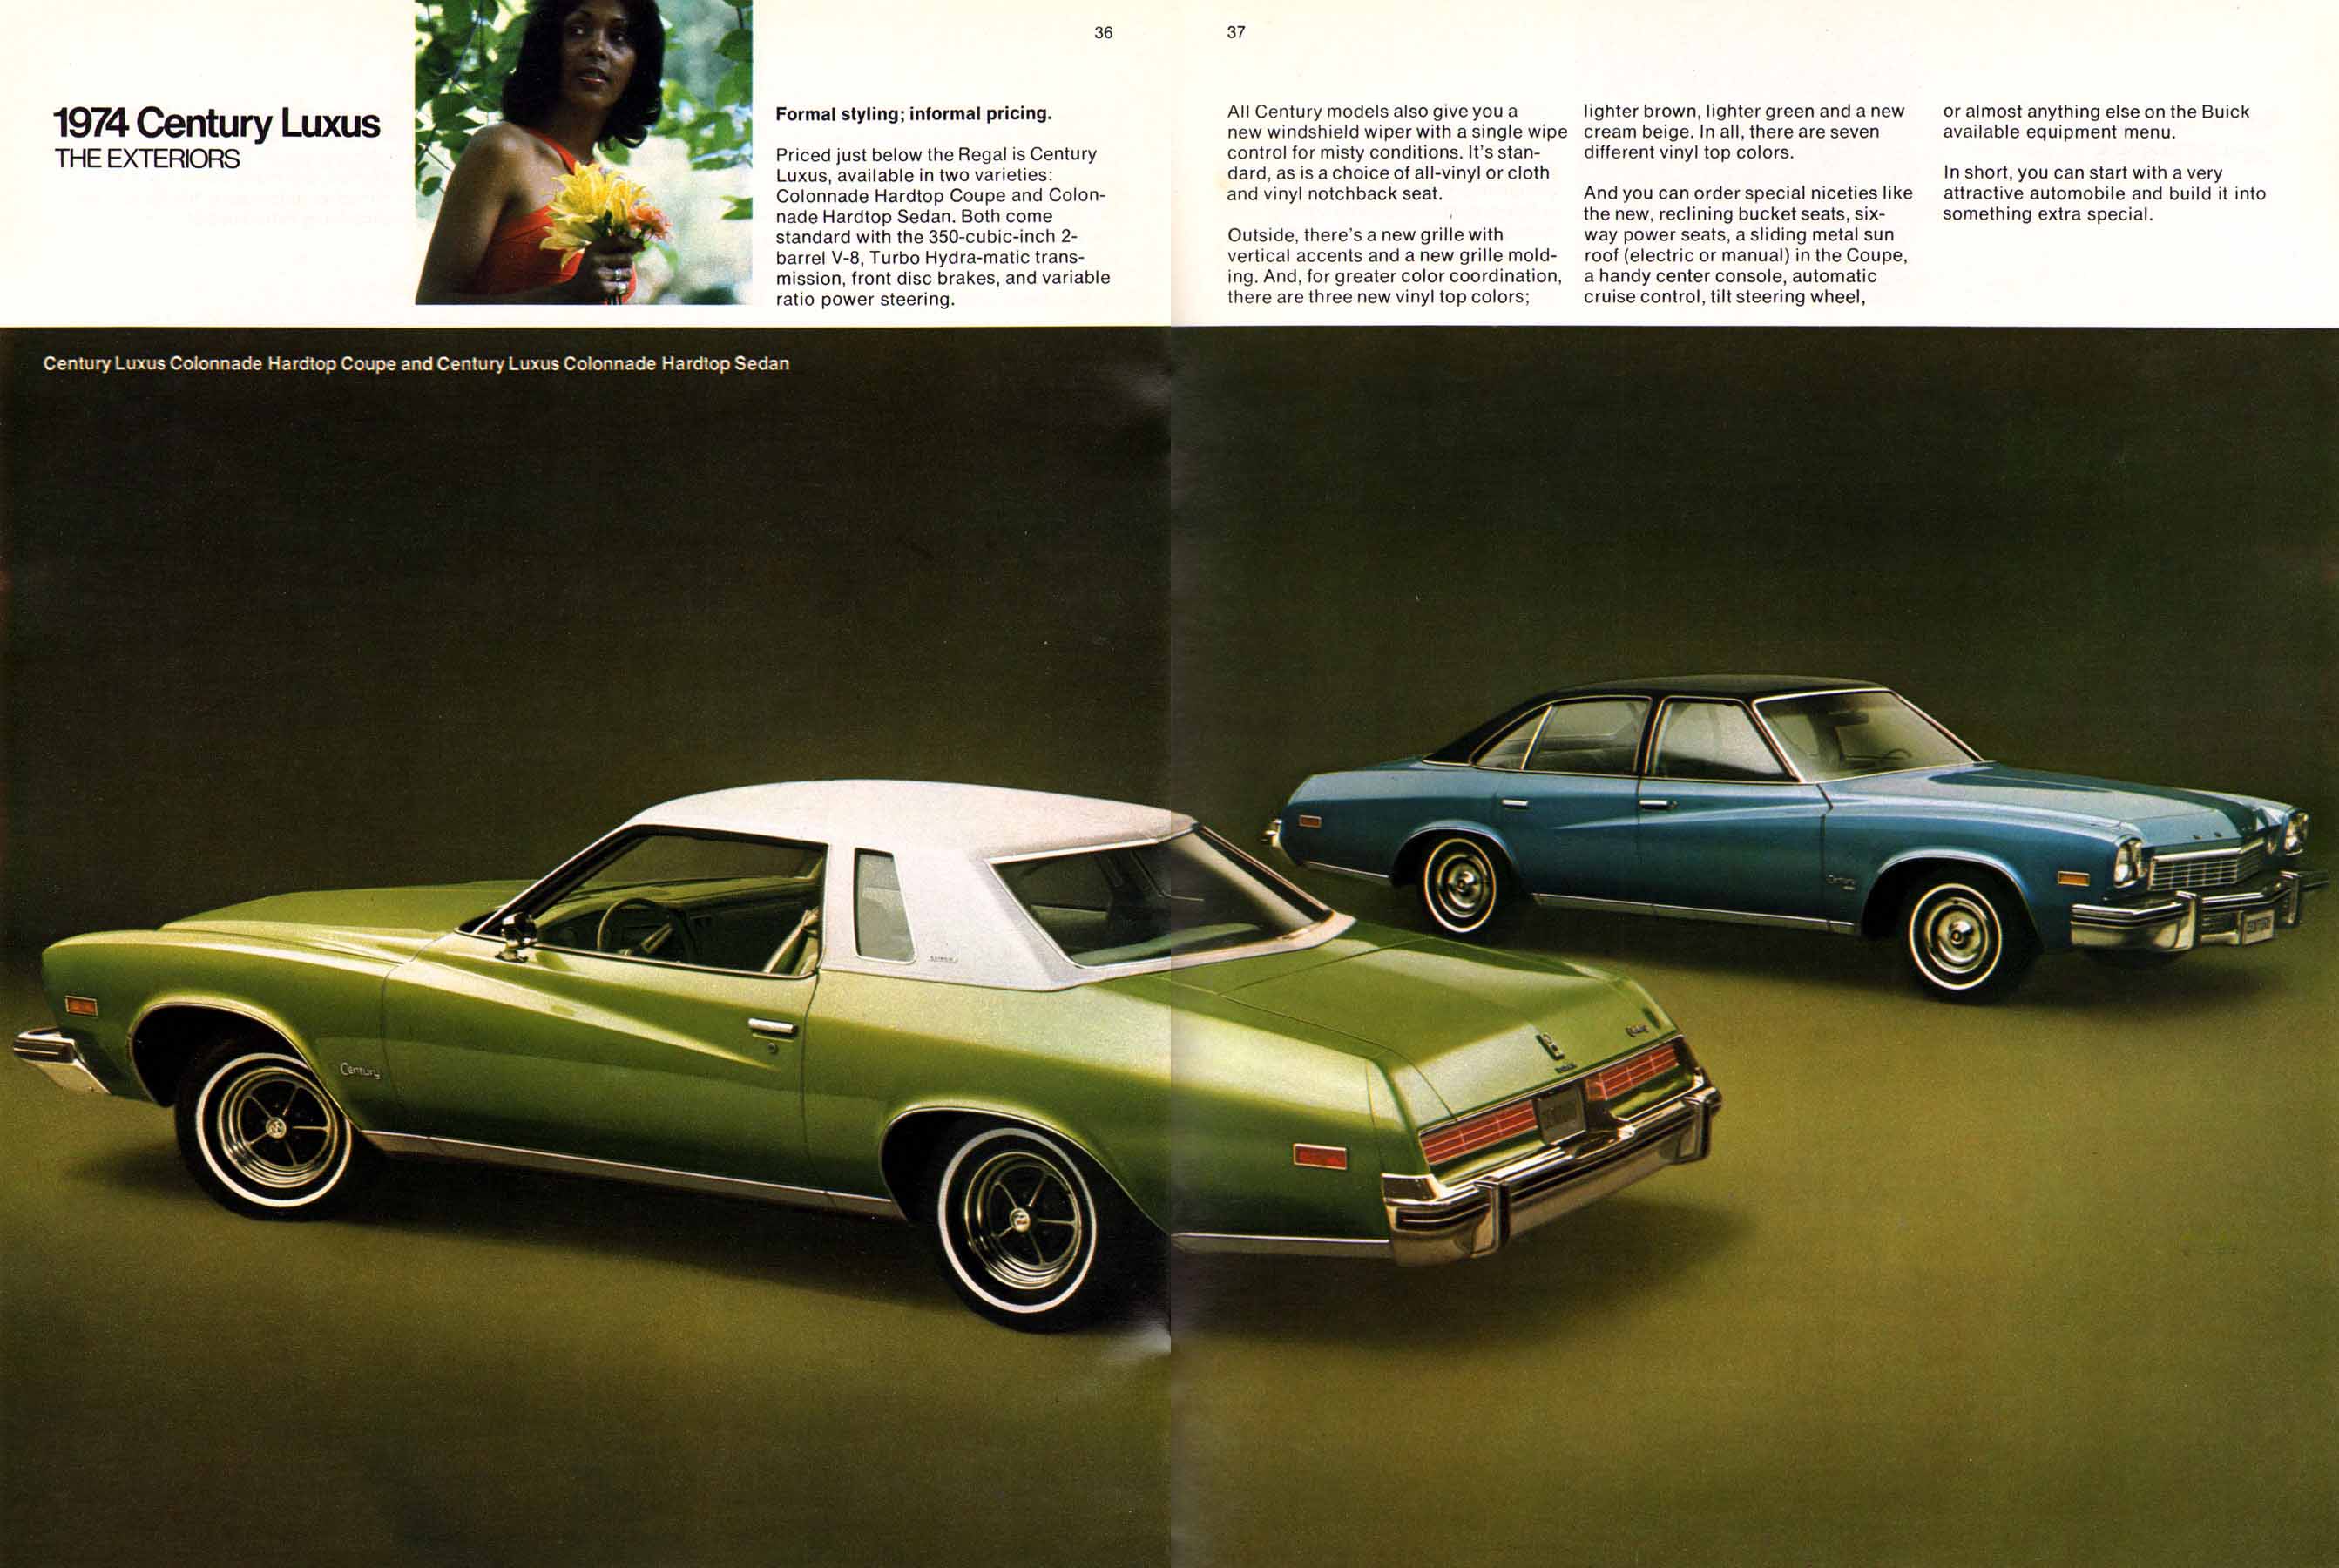 1974 Buick Full Line-36-37